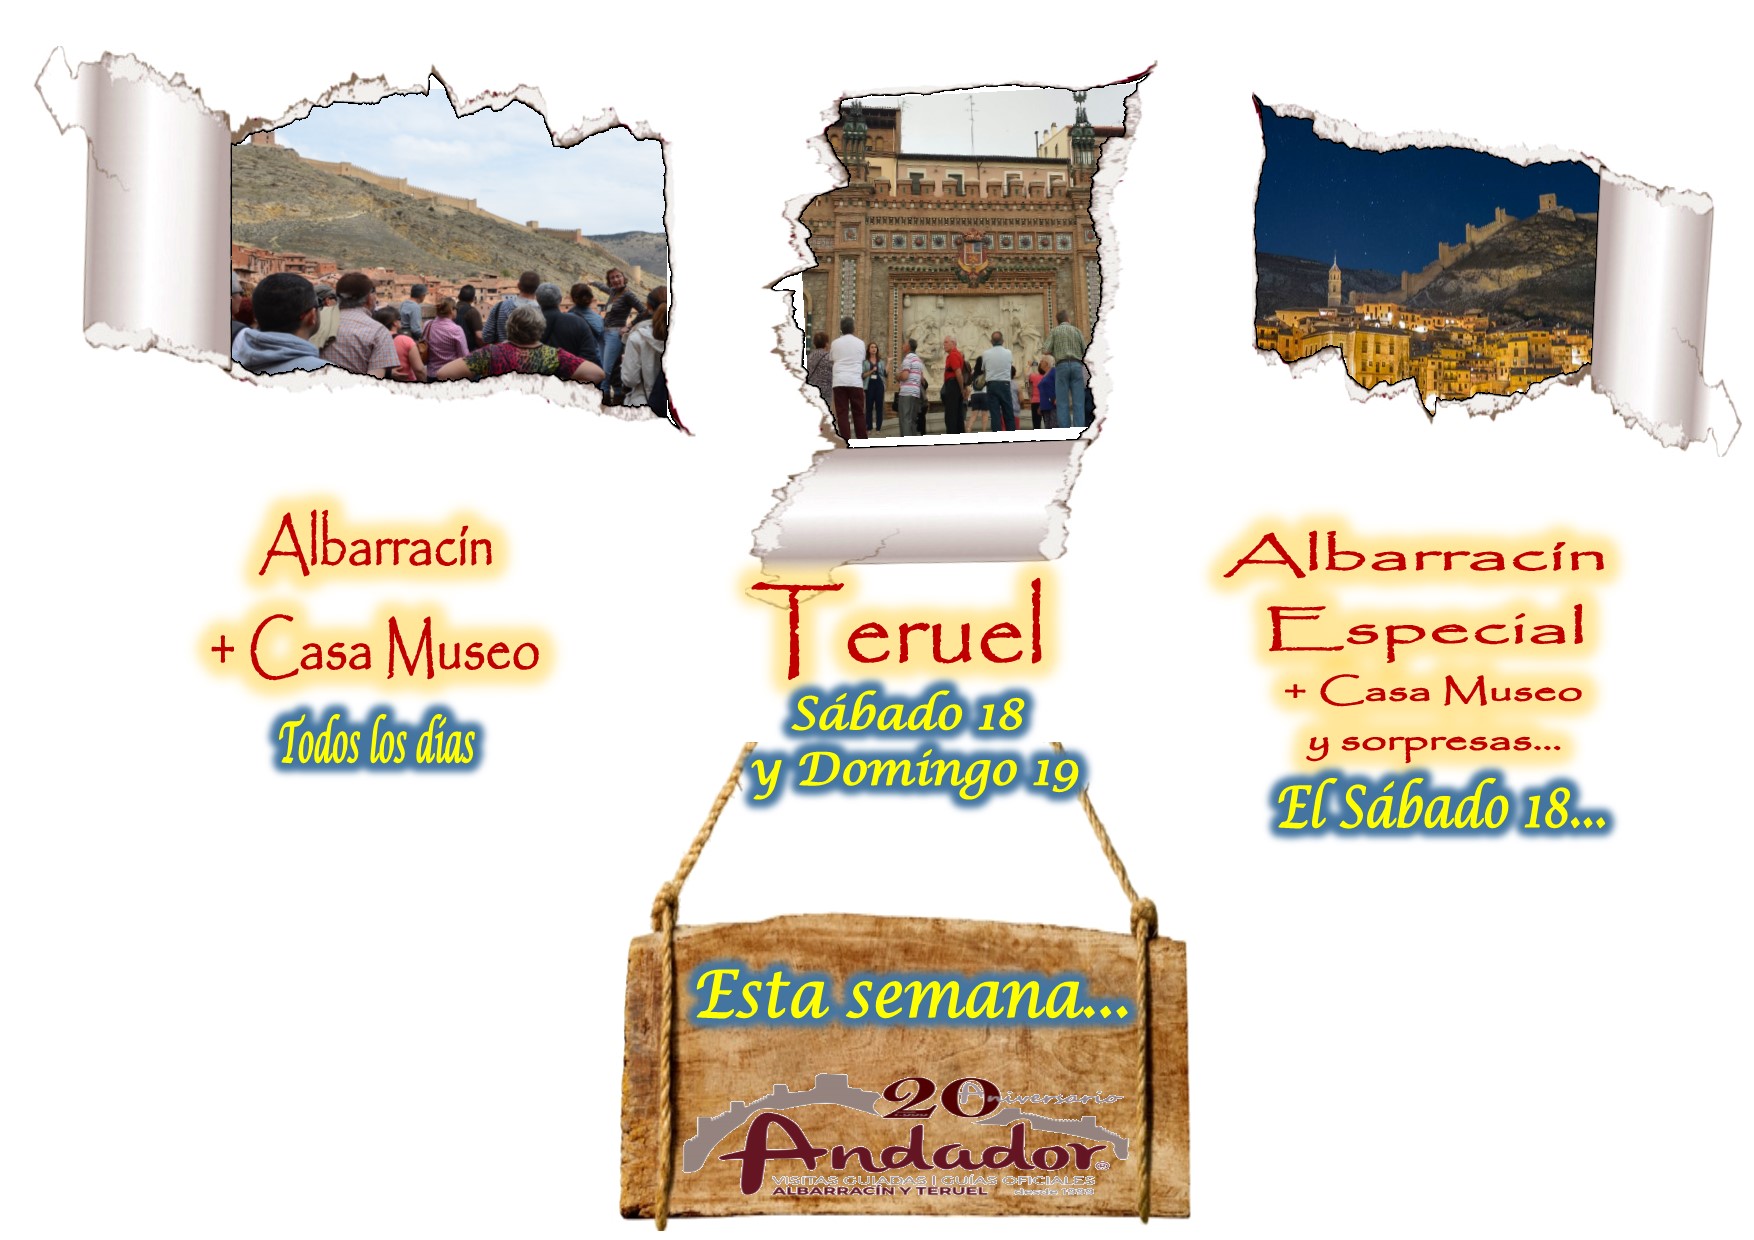 Este fin de semana… Albarracín y Teruel guiados…y el Sábado por la tarde, Albarracín Especial!